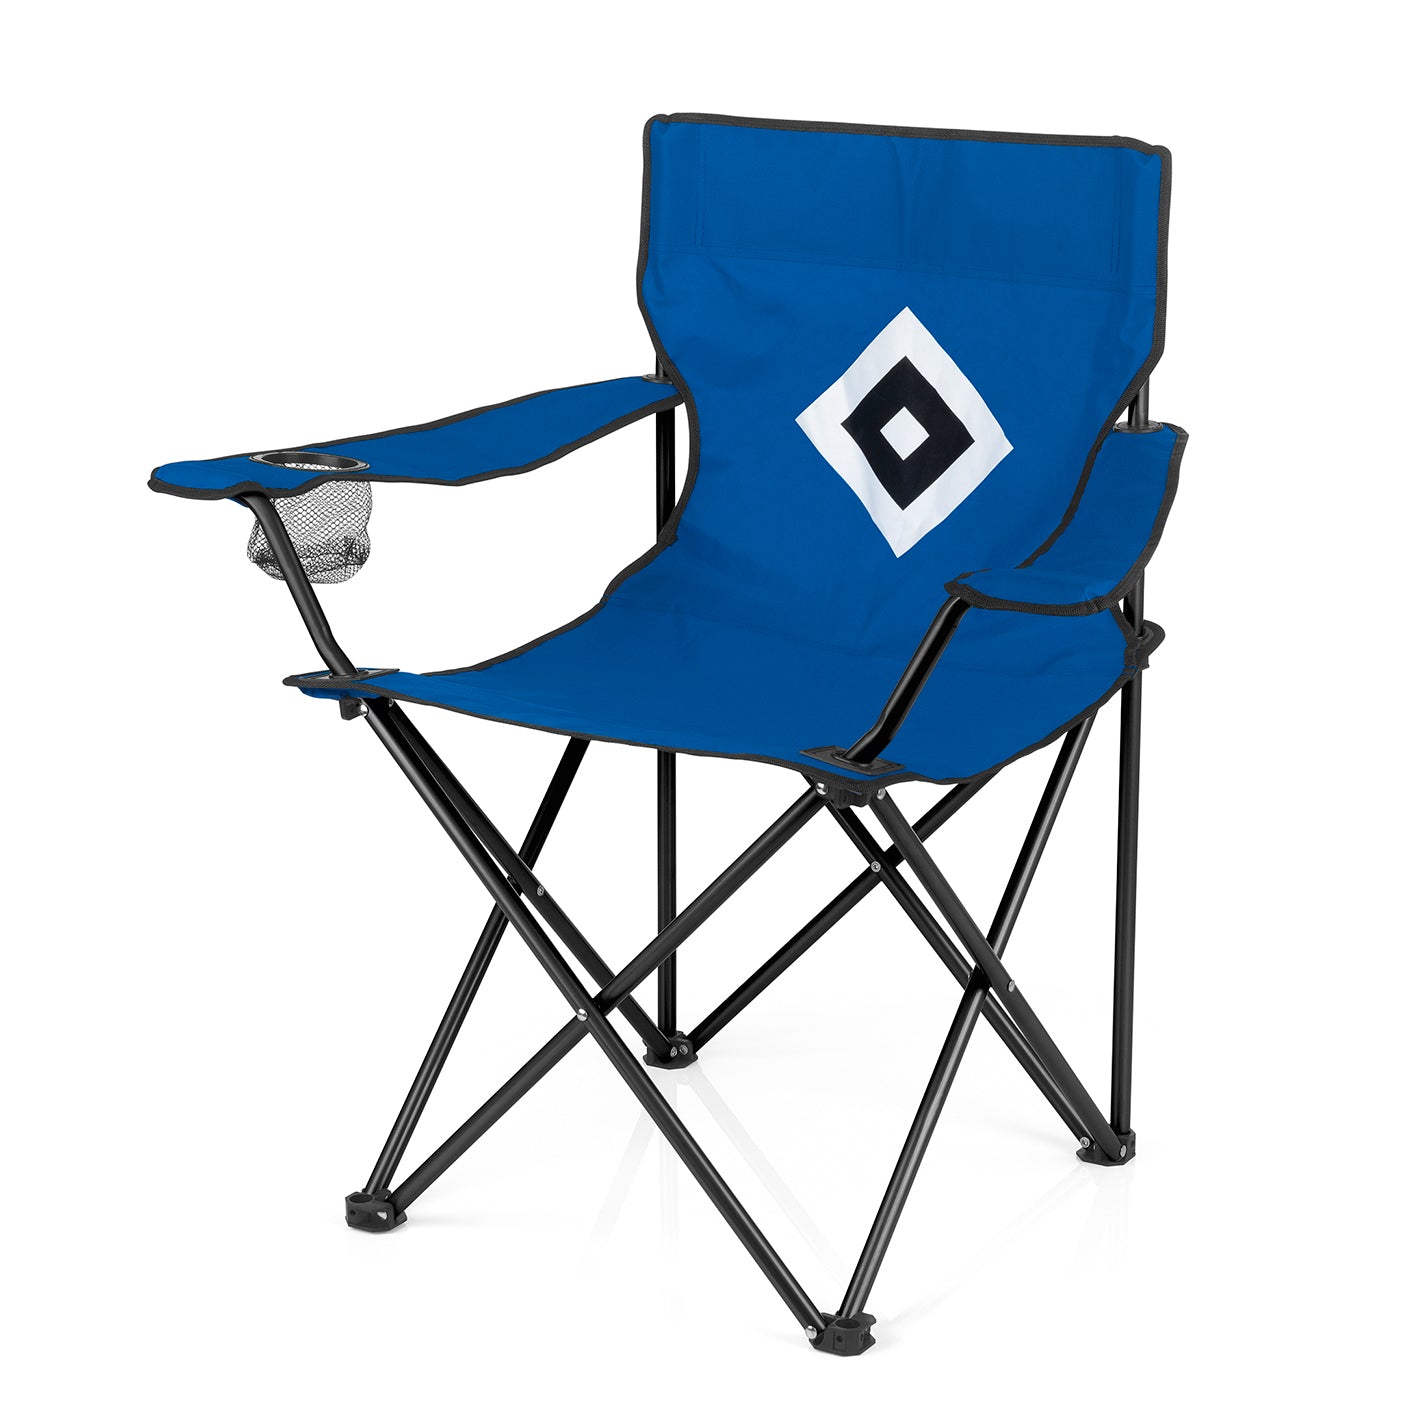 Campingstuhl faltbar mit Logo - 80x50 cm - blau